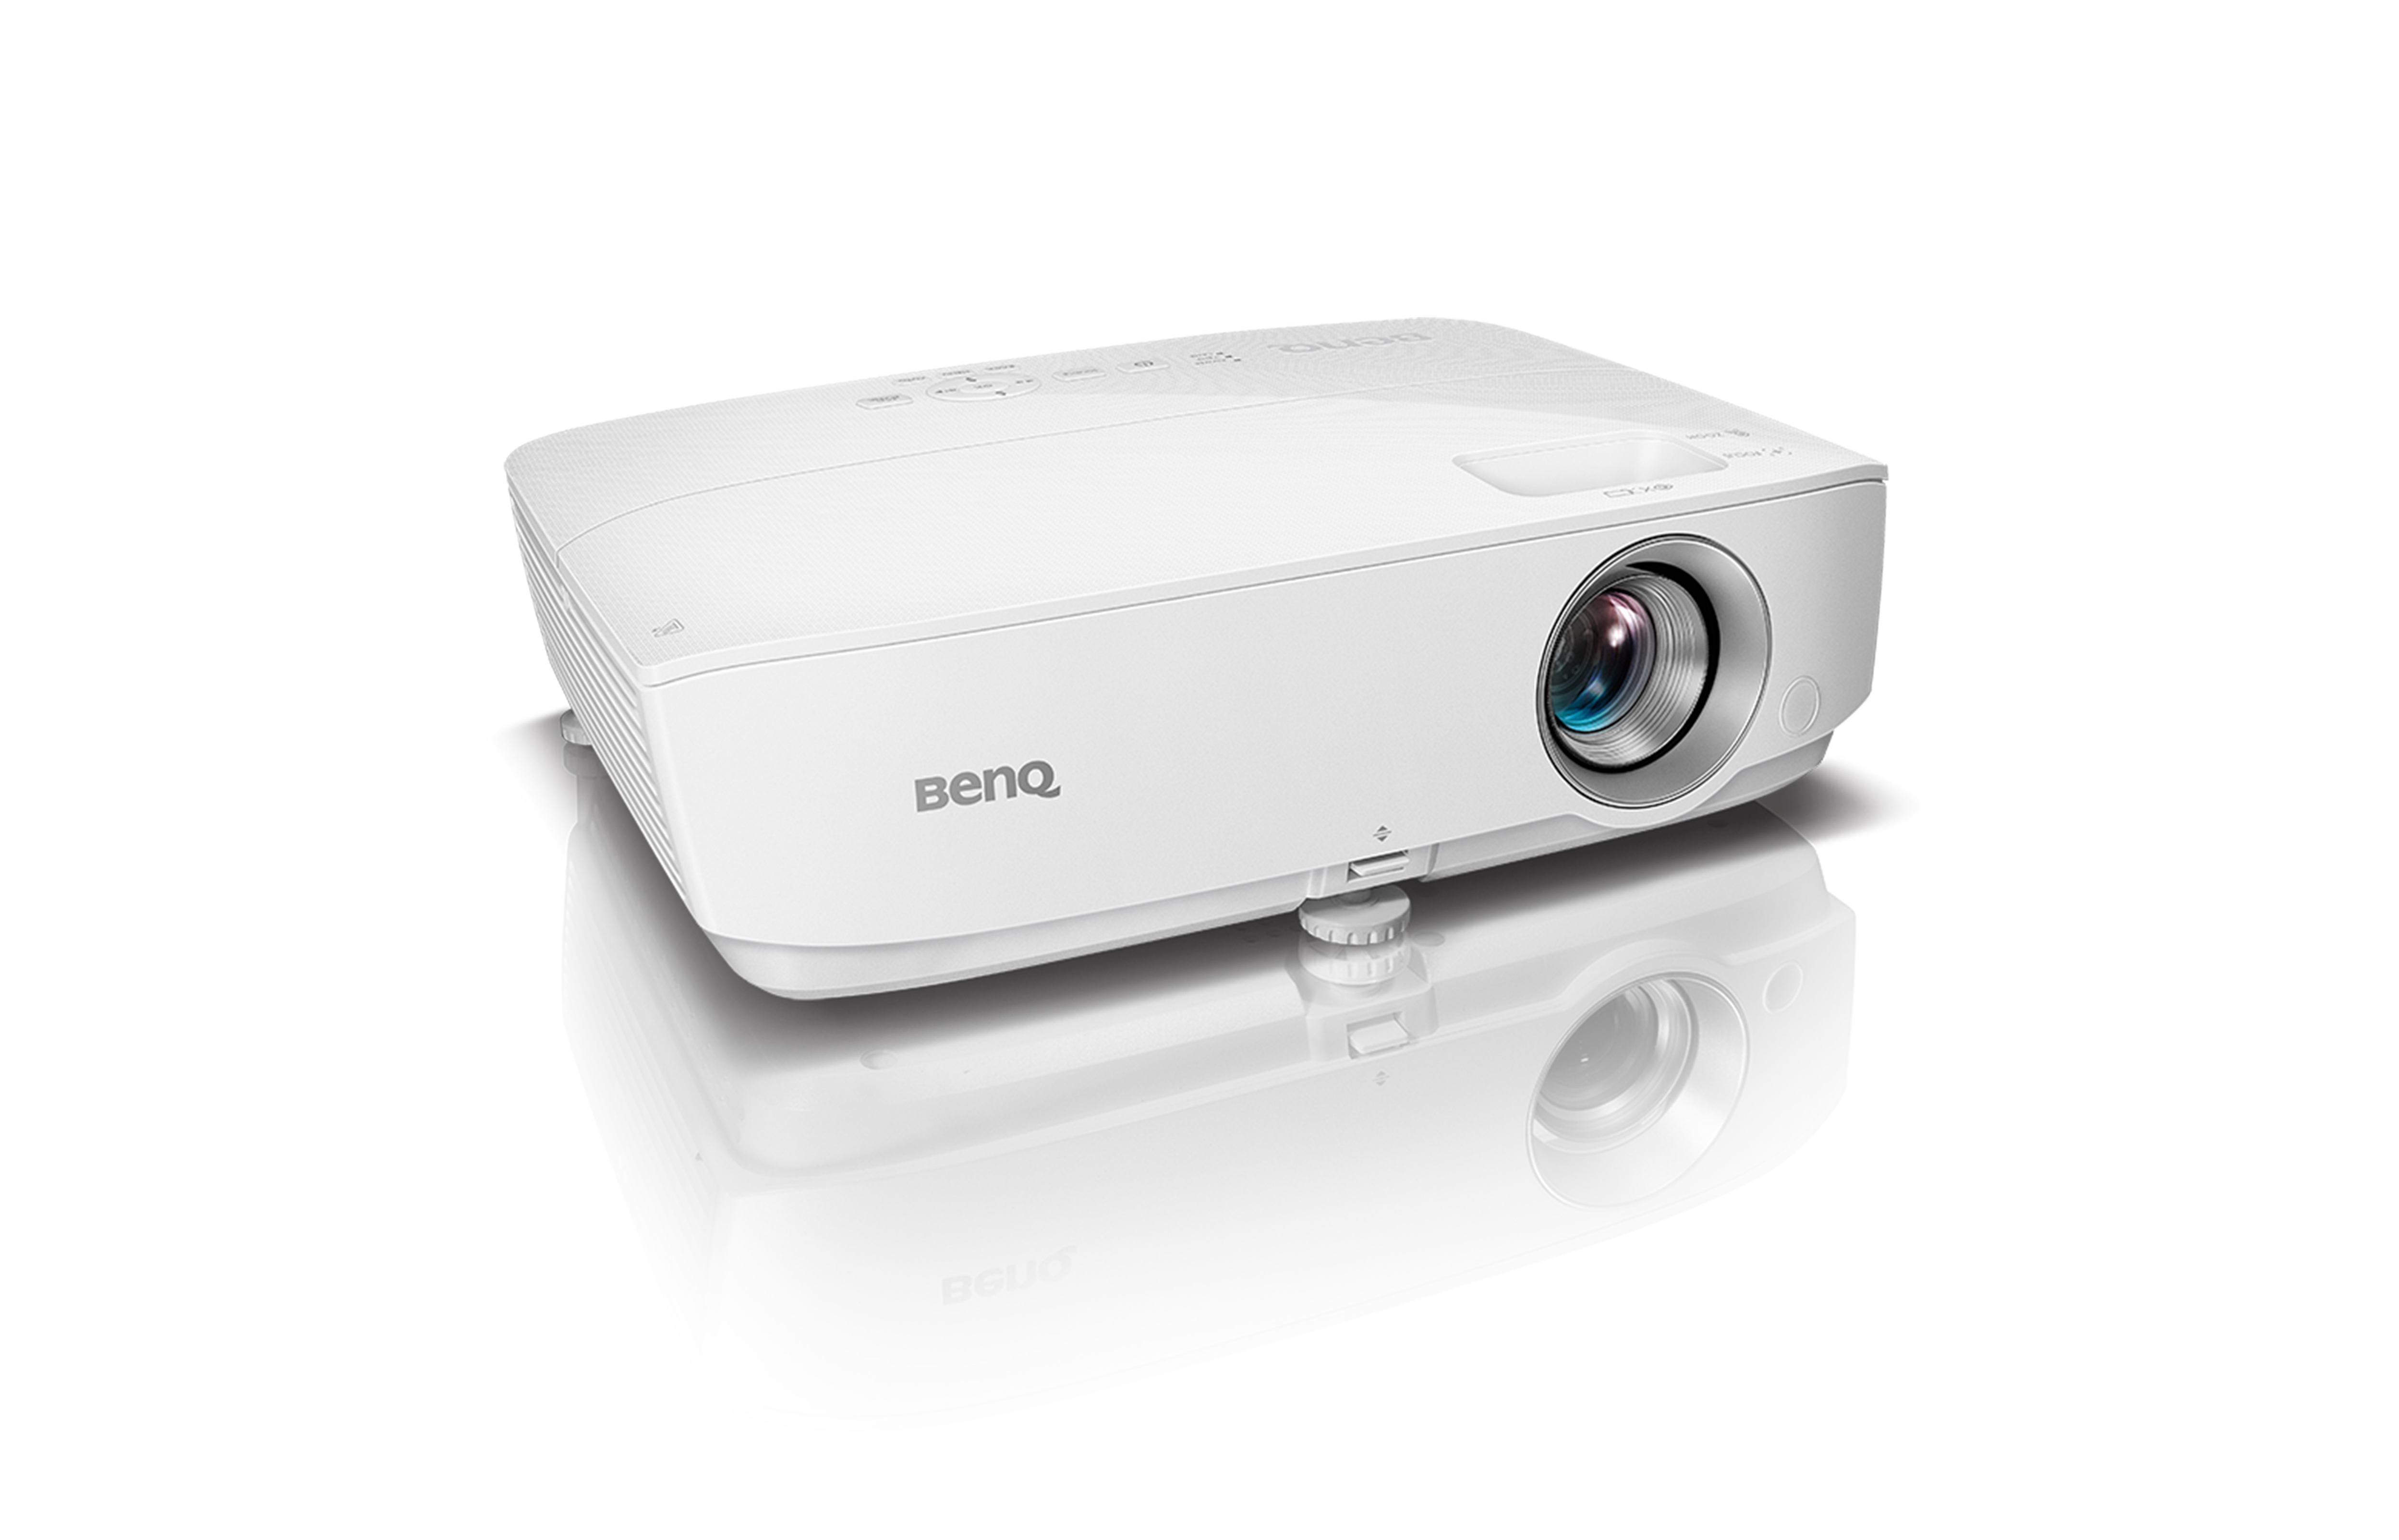 Meet BenQ's Budget-Friendly HT1070A Home Cinema Projector